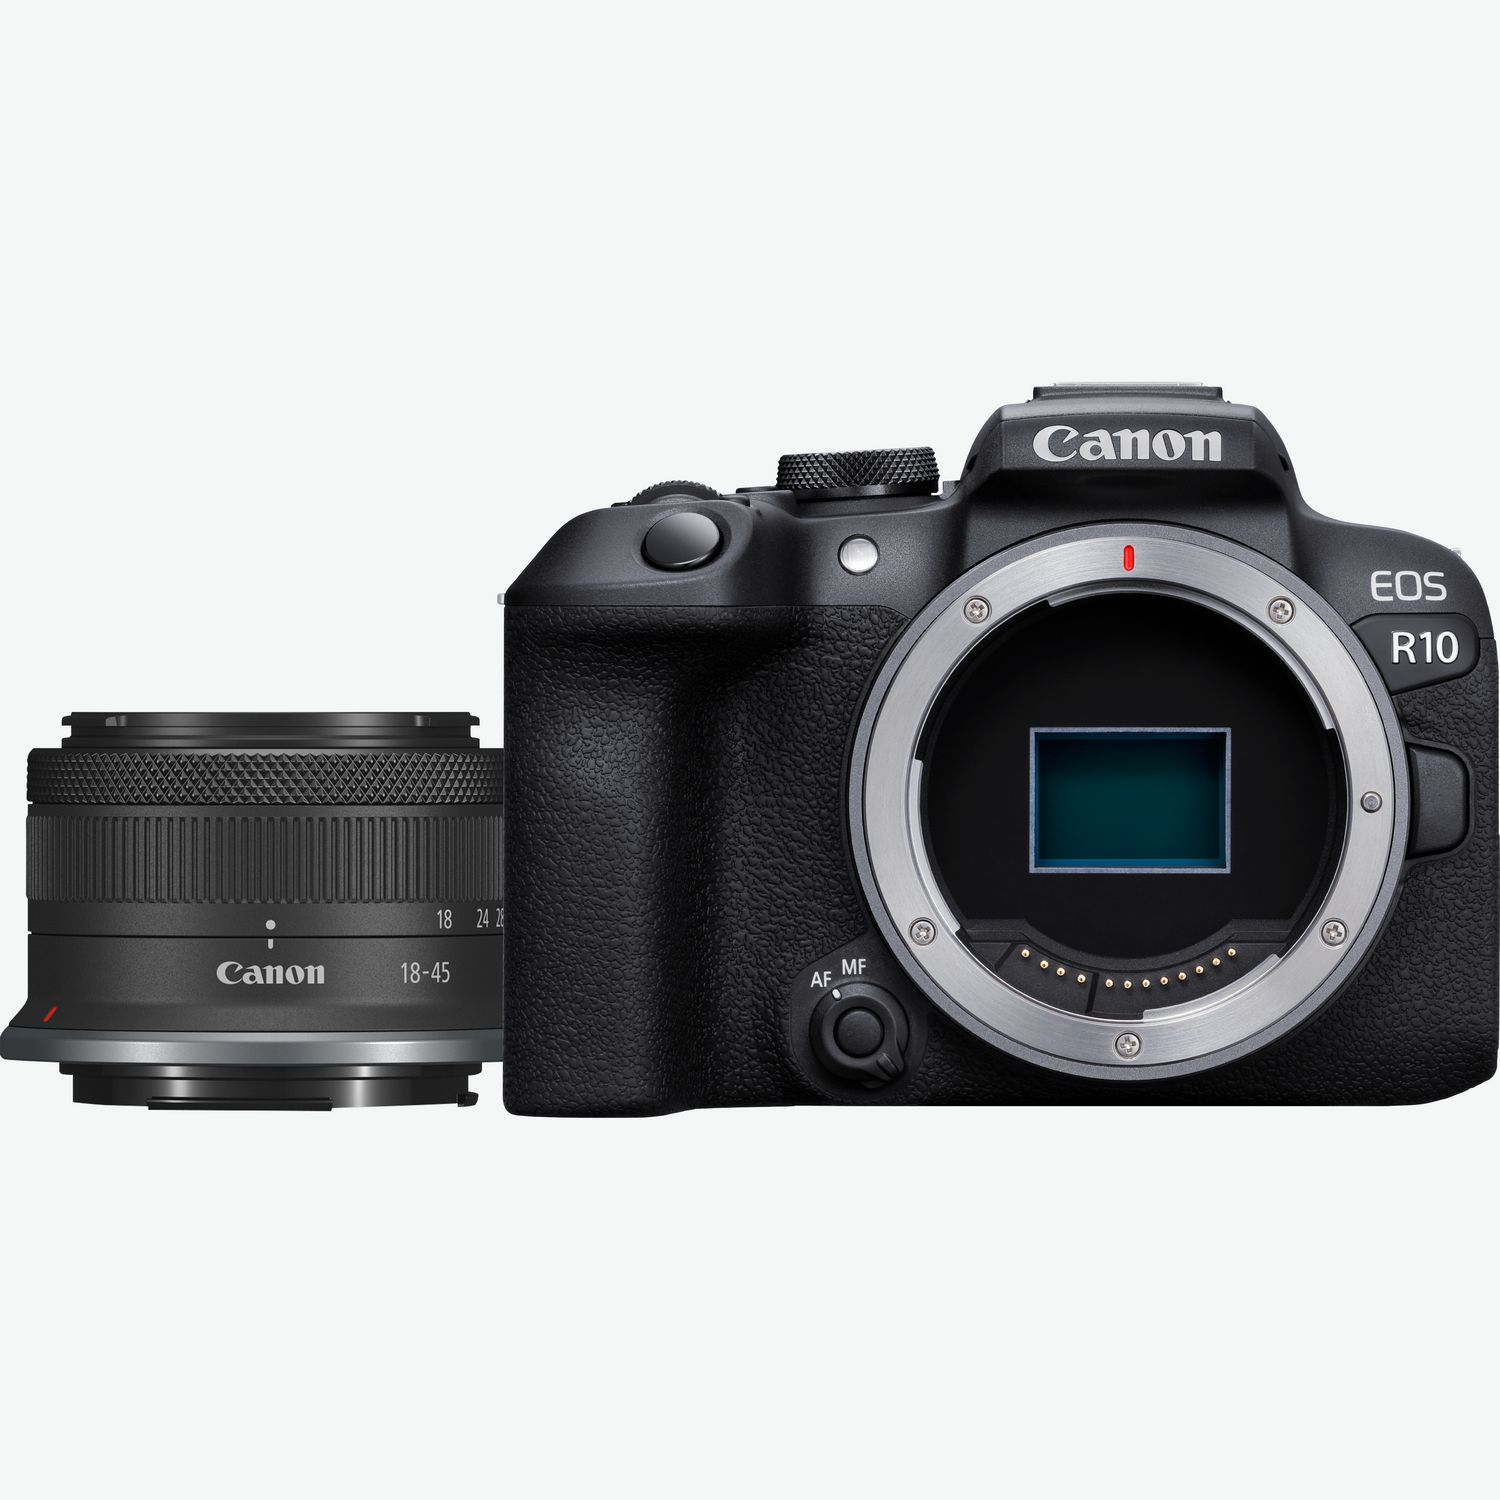 STM M50 II EOS Graphit-Grau Osterreich Objektiv, IS EF-M Canon — f/3.5-6.3 Shop Mark Buy Canon 15-45mm in + spiegellose Schwarz Kamera, WLAN-Kameras